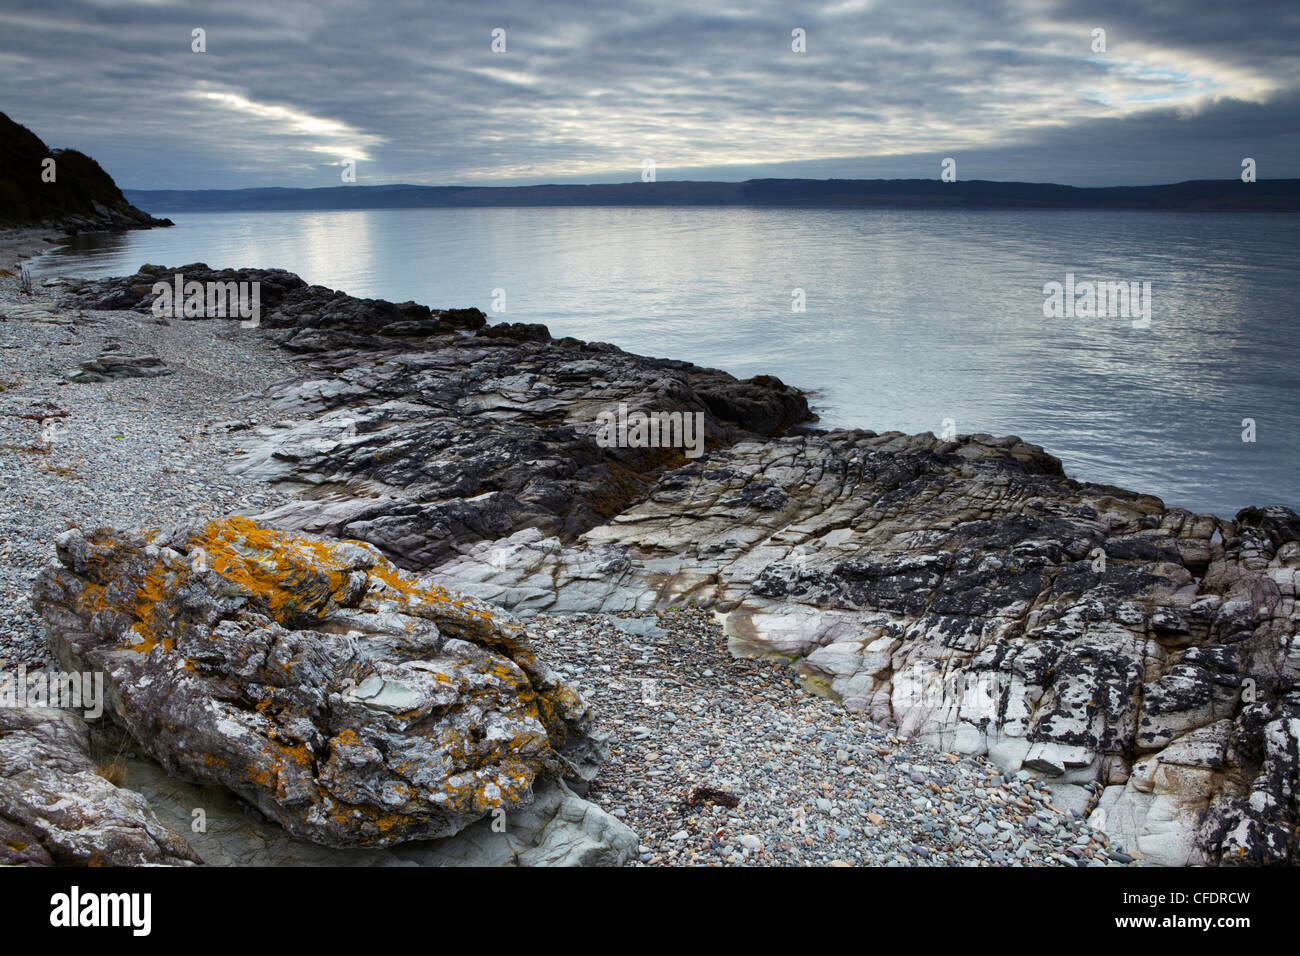 La côte de l'île d'Arran près de Catacol à l'échelle vers la péninsule de Kintyre sur le continent écossais, Ecosse, Royaume-Uni Banque D'Images